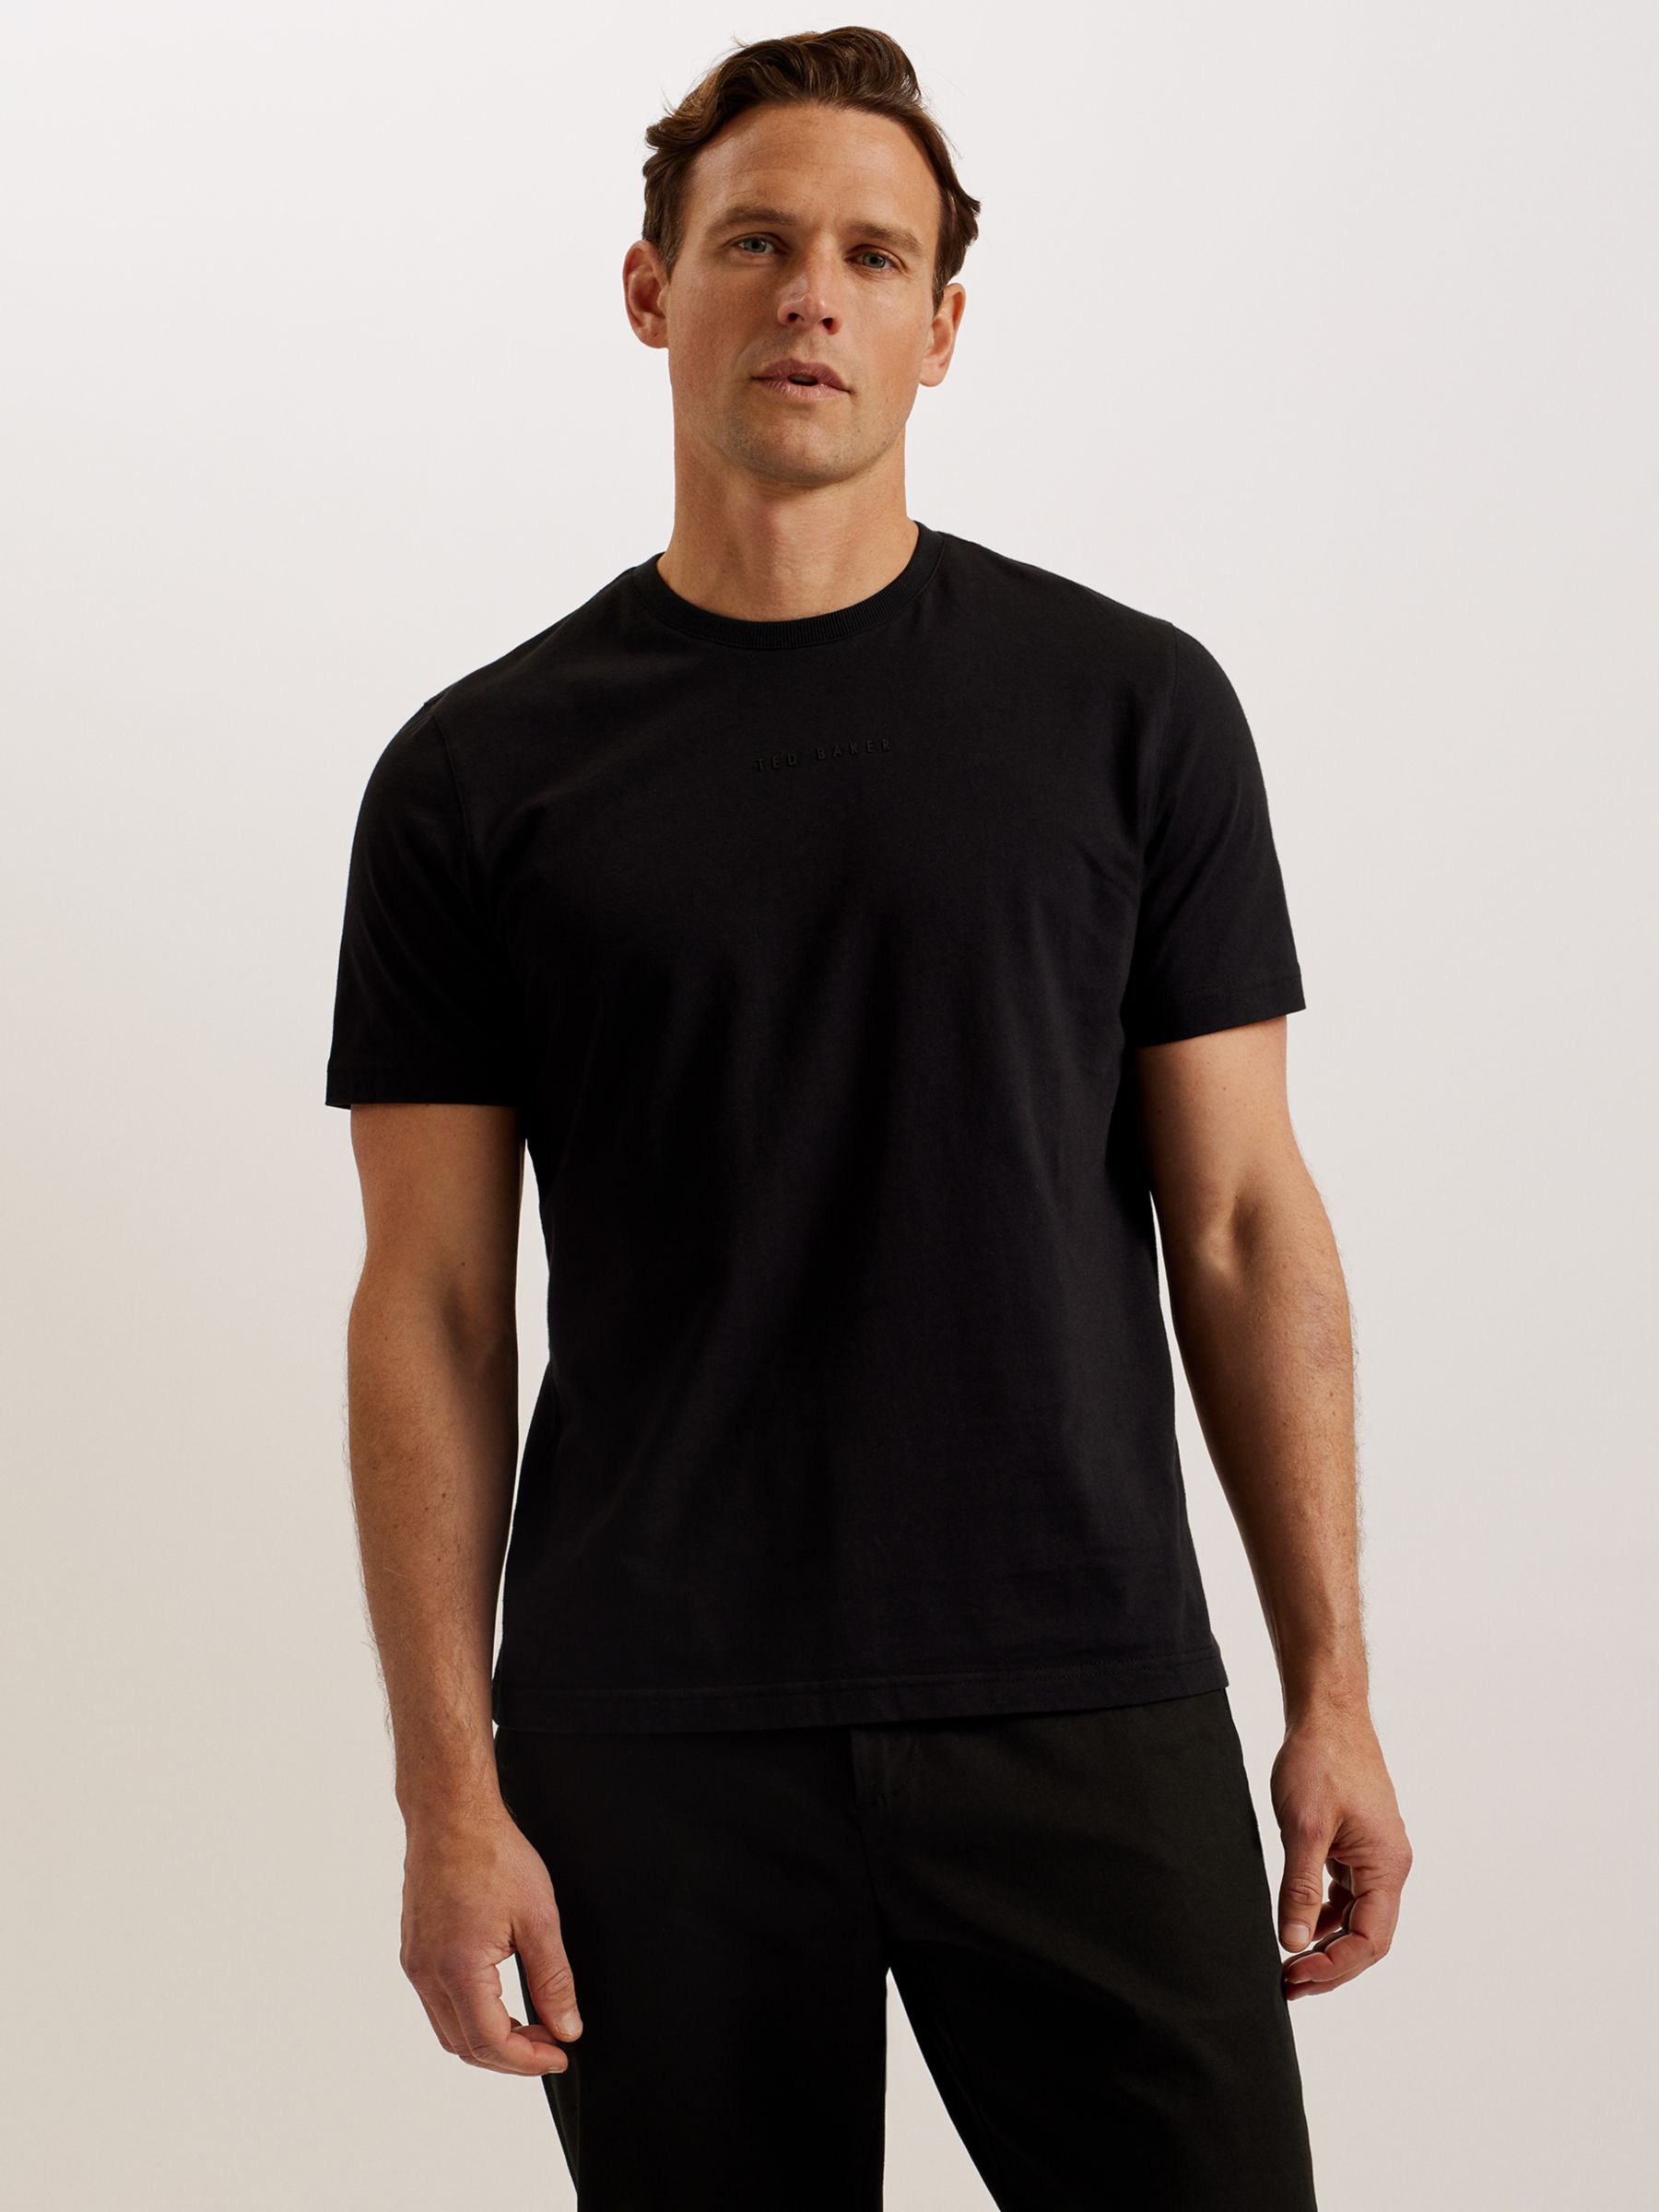 Ted Baker Wiskin Regular Branded Short Sleeve T-Shirt, Black Black, XS